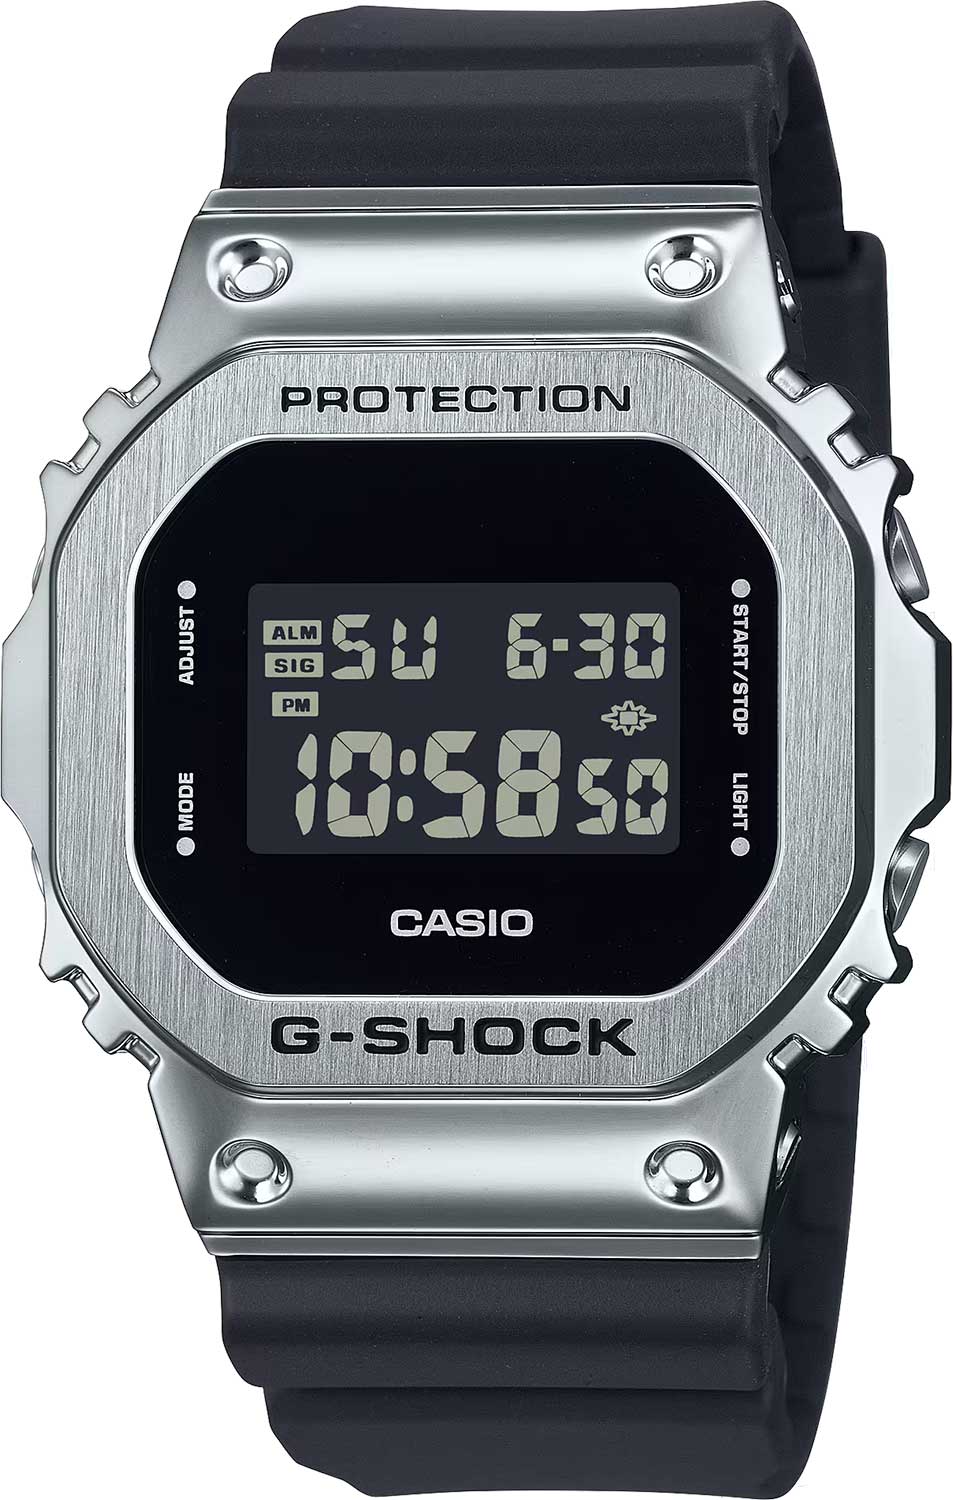    Casio G-SHOCK GM-5600U-1  